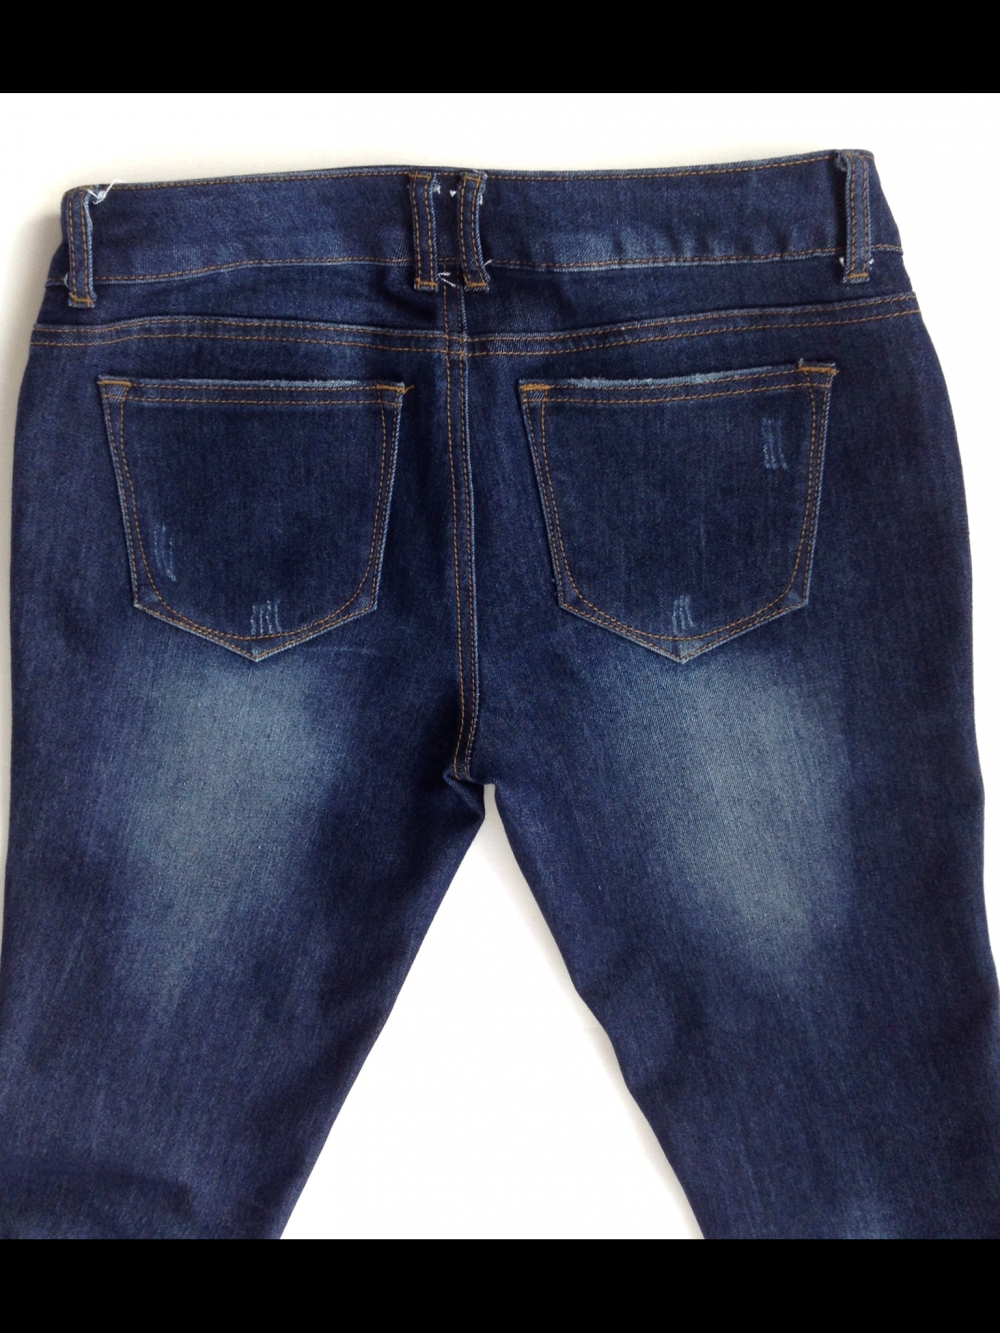 Женские джинсы темно-синего цвета, Slim Fit, низкая талия, на 28 (44 рус), Incity